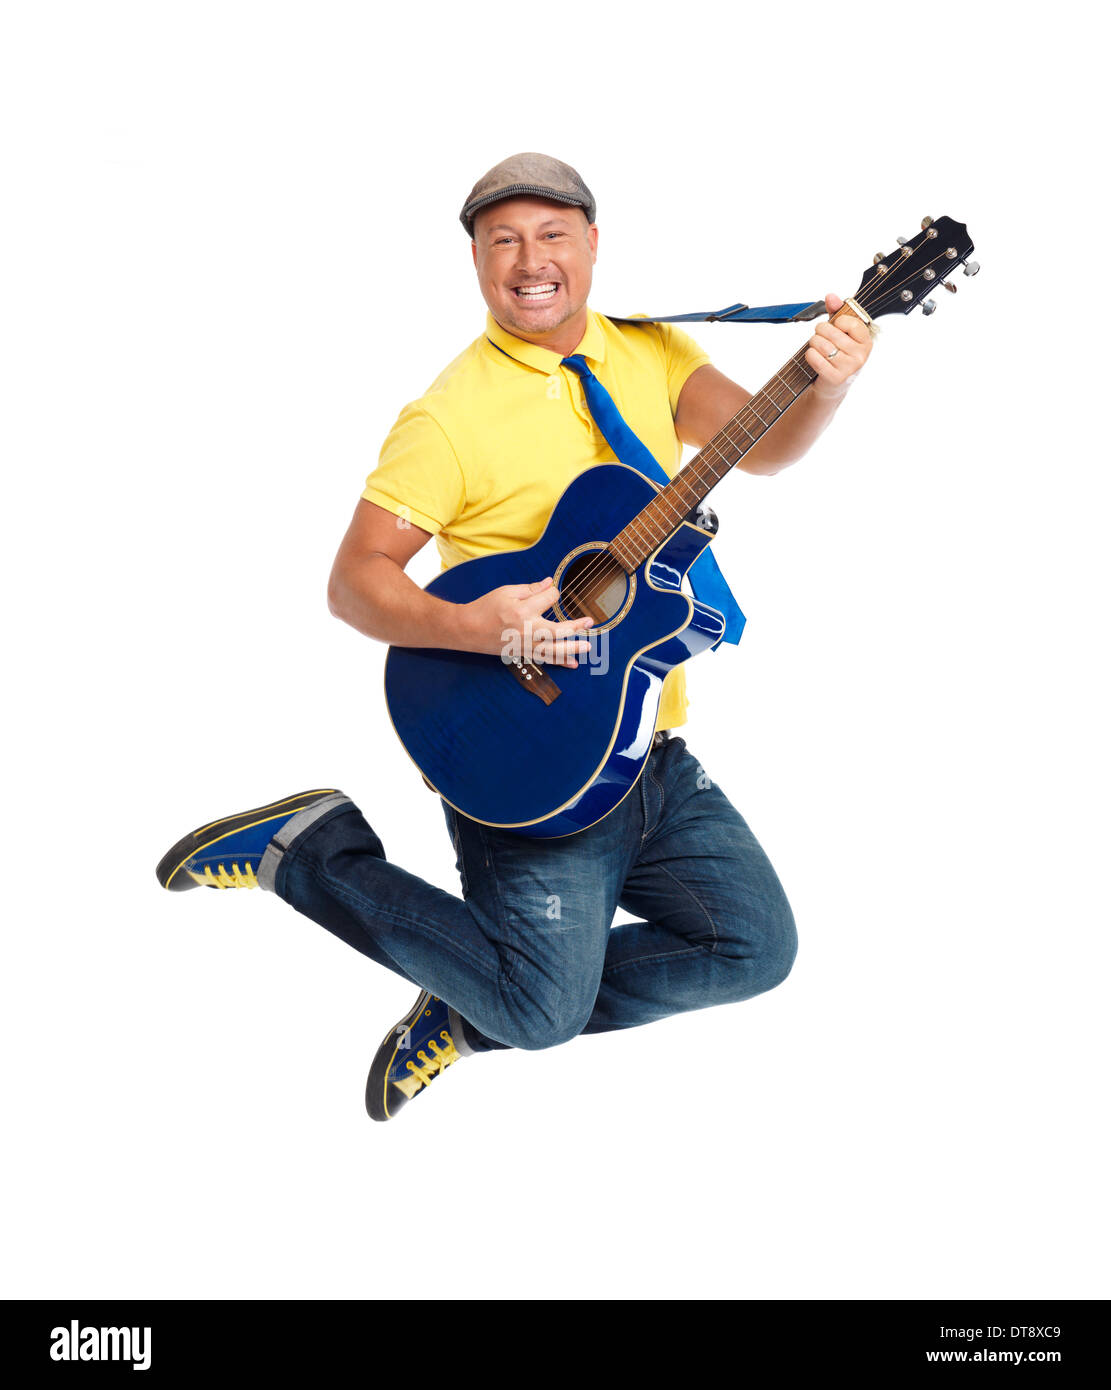 Happy smiling young man guitar player jumping avec une guitare acoustique dans l'air isolé sur fond blanc Banque D'Images